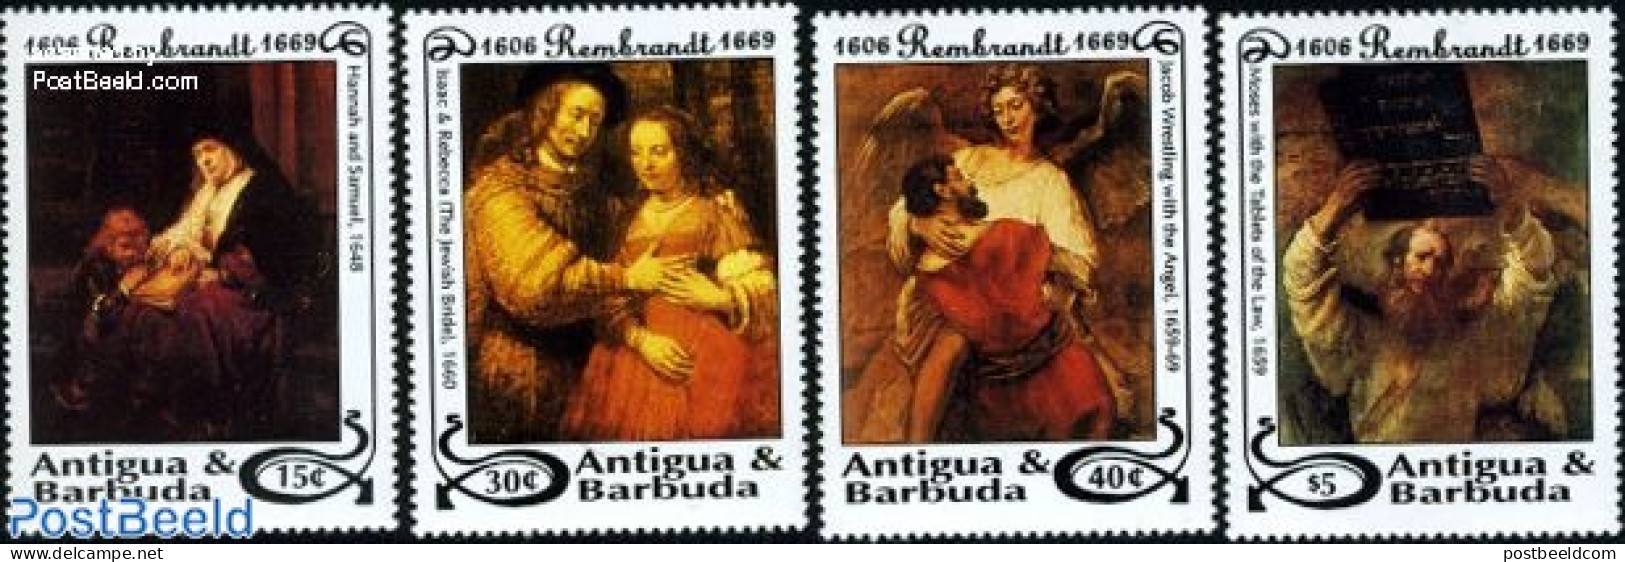 Antigua & Barbuda 1993 Rembrandt 4v, Mint NH, Art - Paintings - Rembrandt - Antigua And Barbuda (1981-...)